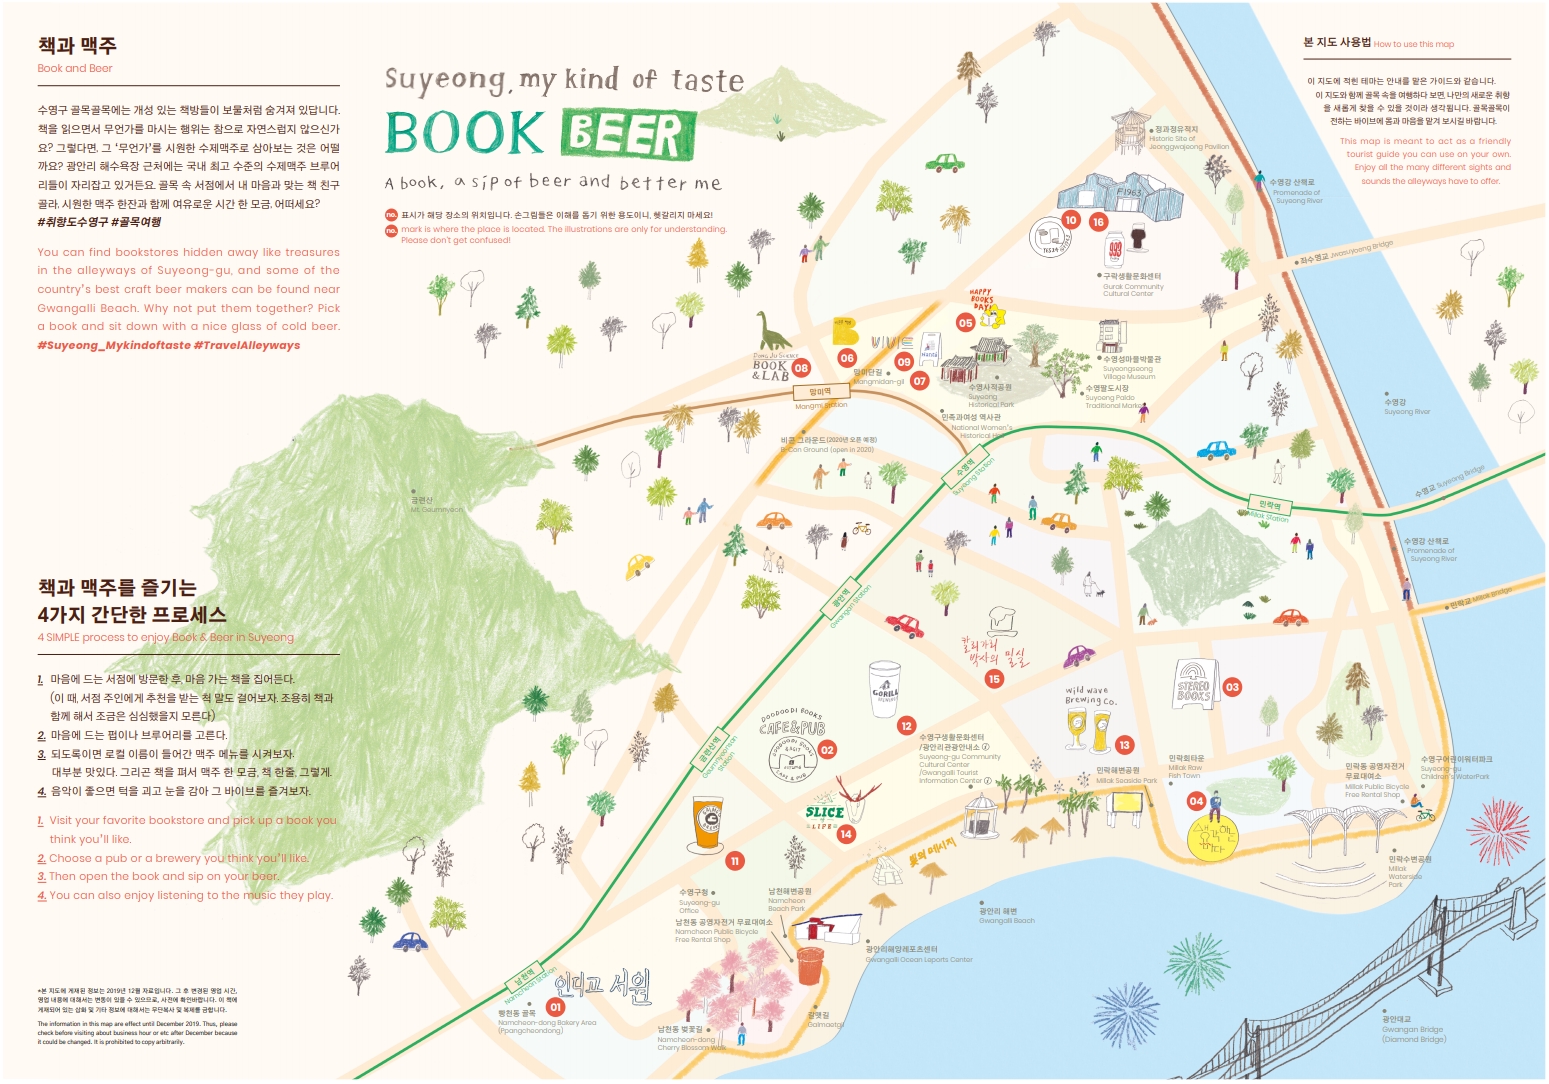 수영구 취향여행 - 책과 맥주 관련 표기한 지도 이미지